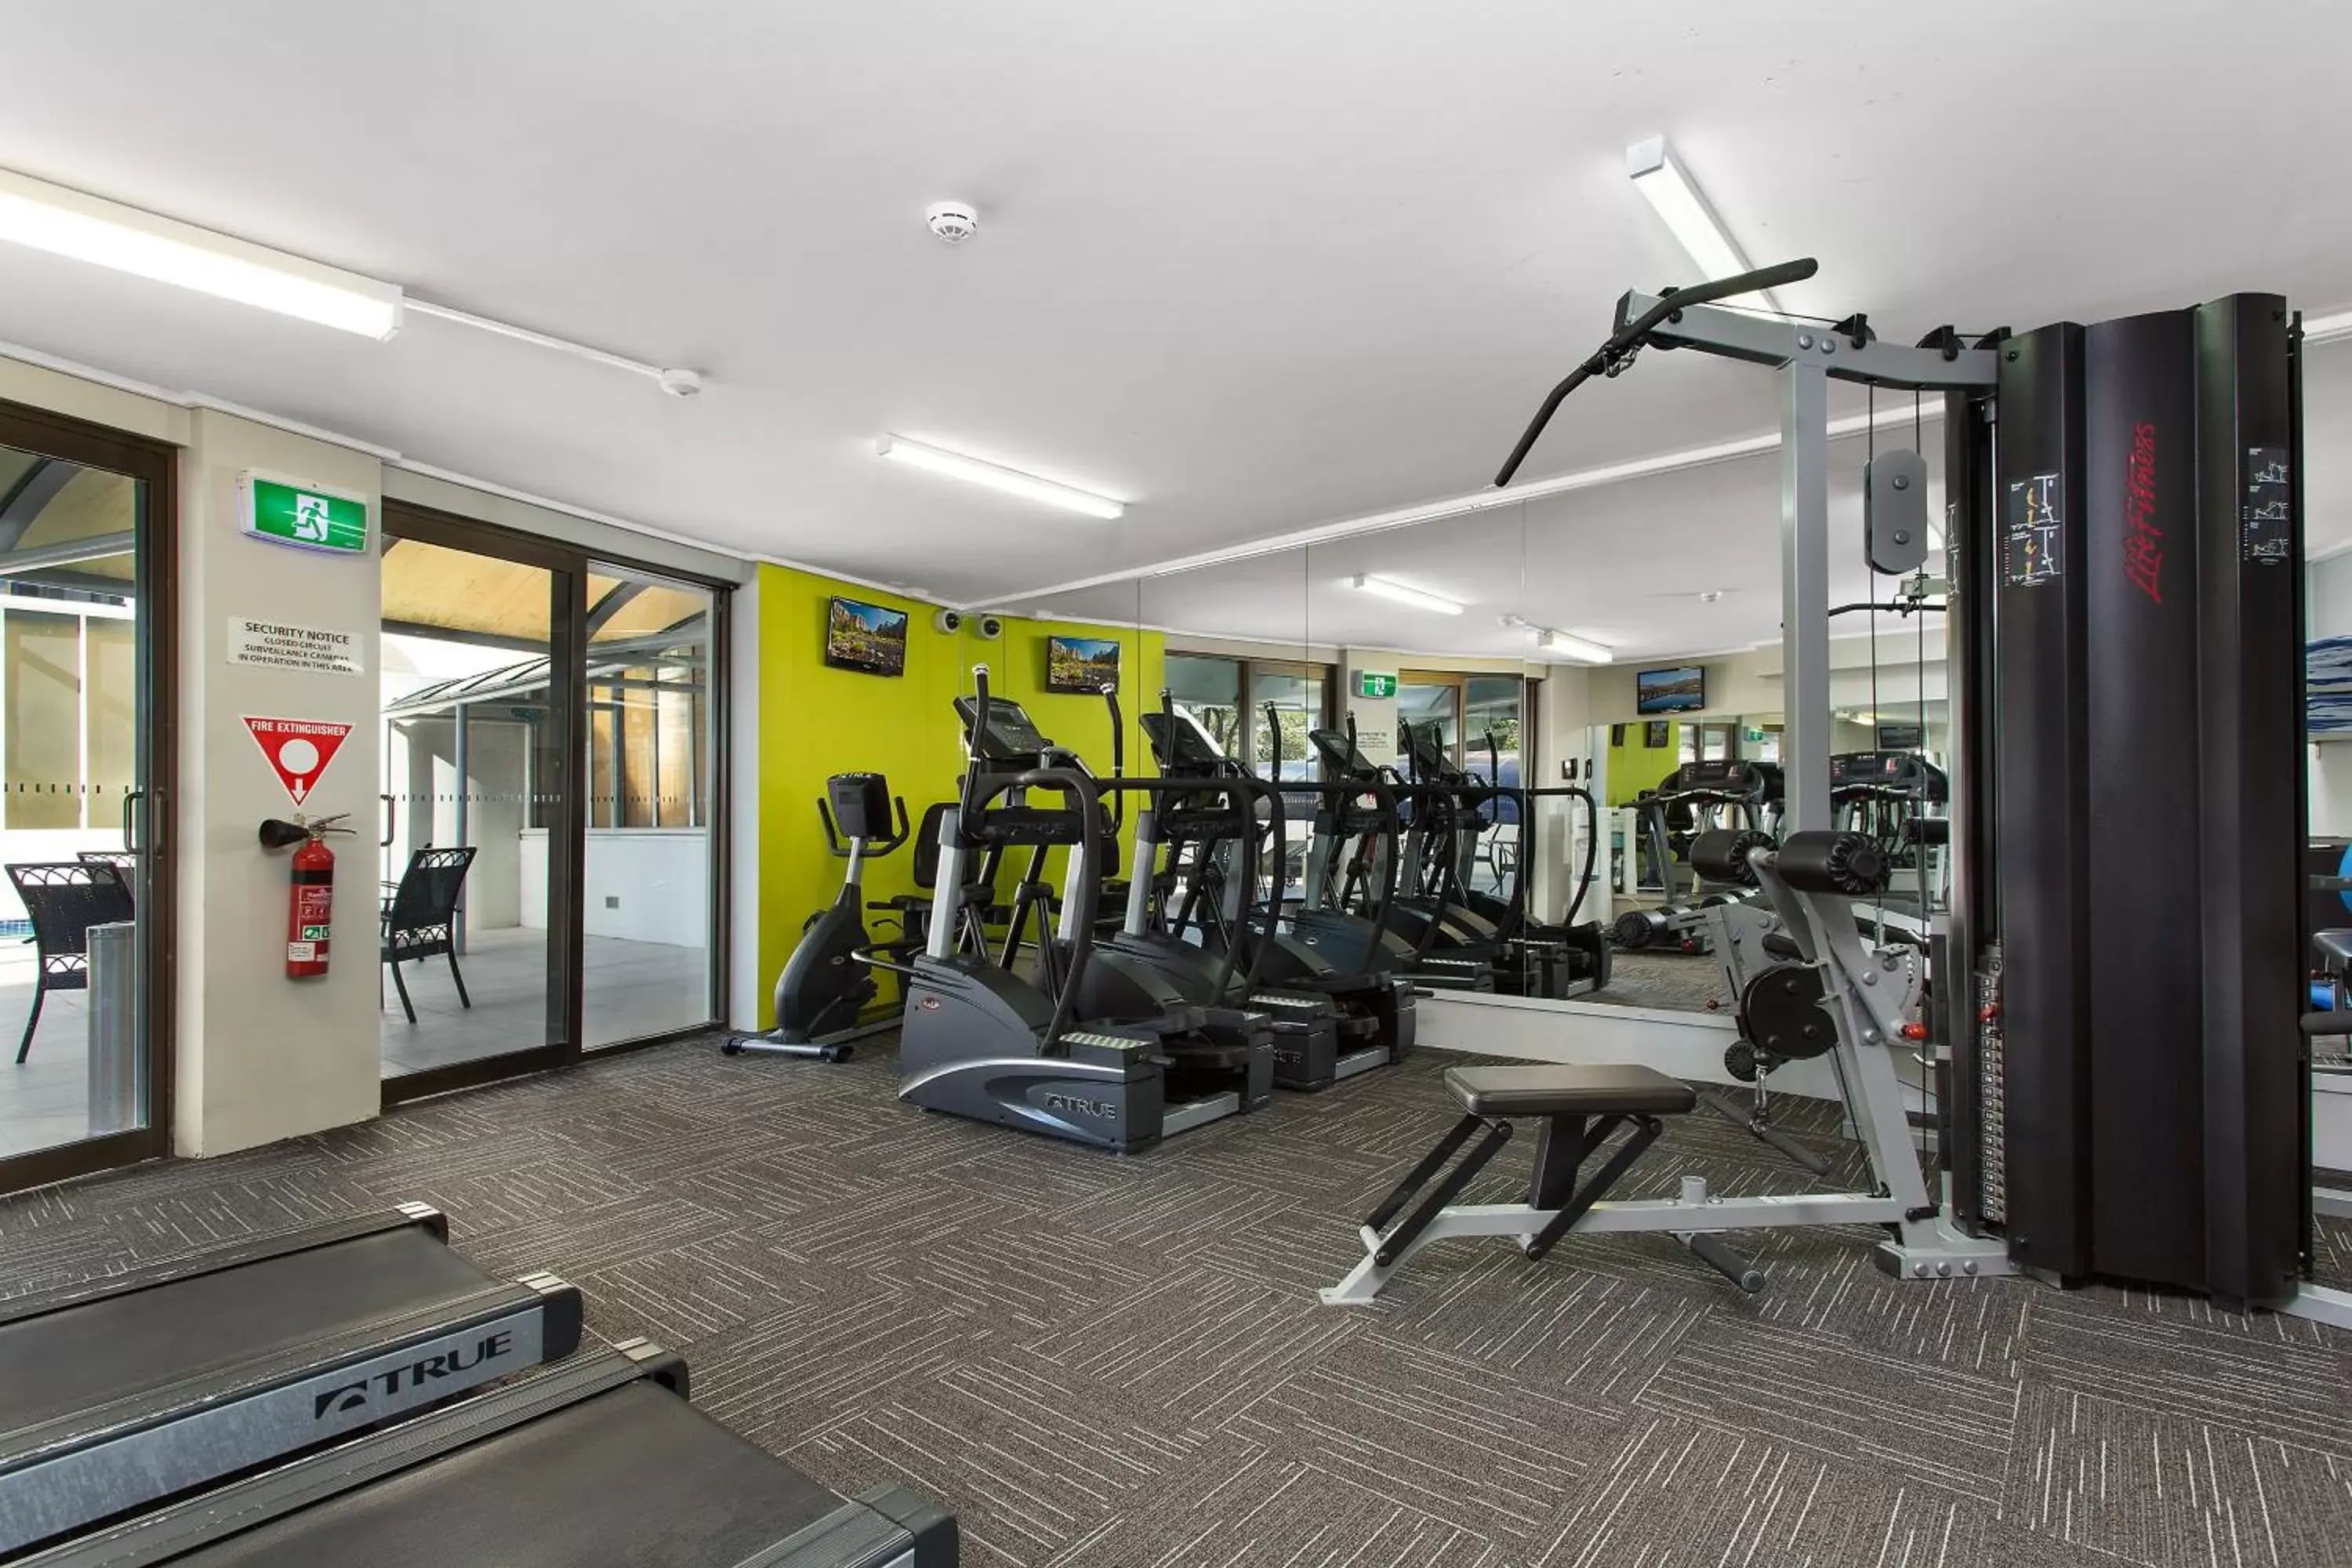 Fitness centre/facilities, Fitness Center/Facilities in Novotel Sydney Parramatta